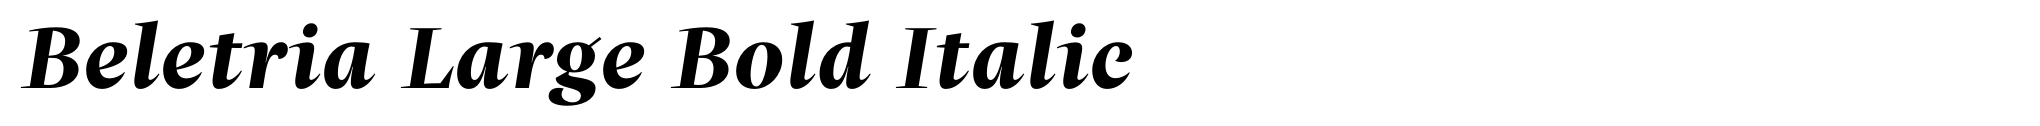 Beletria Large Bold Italic image